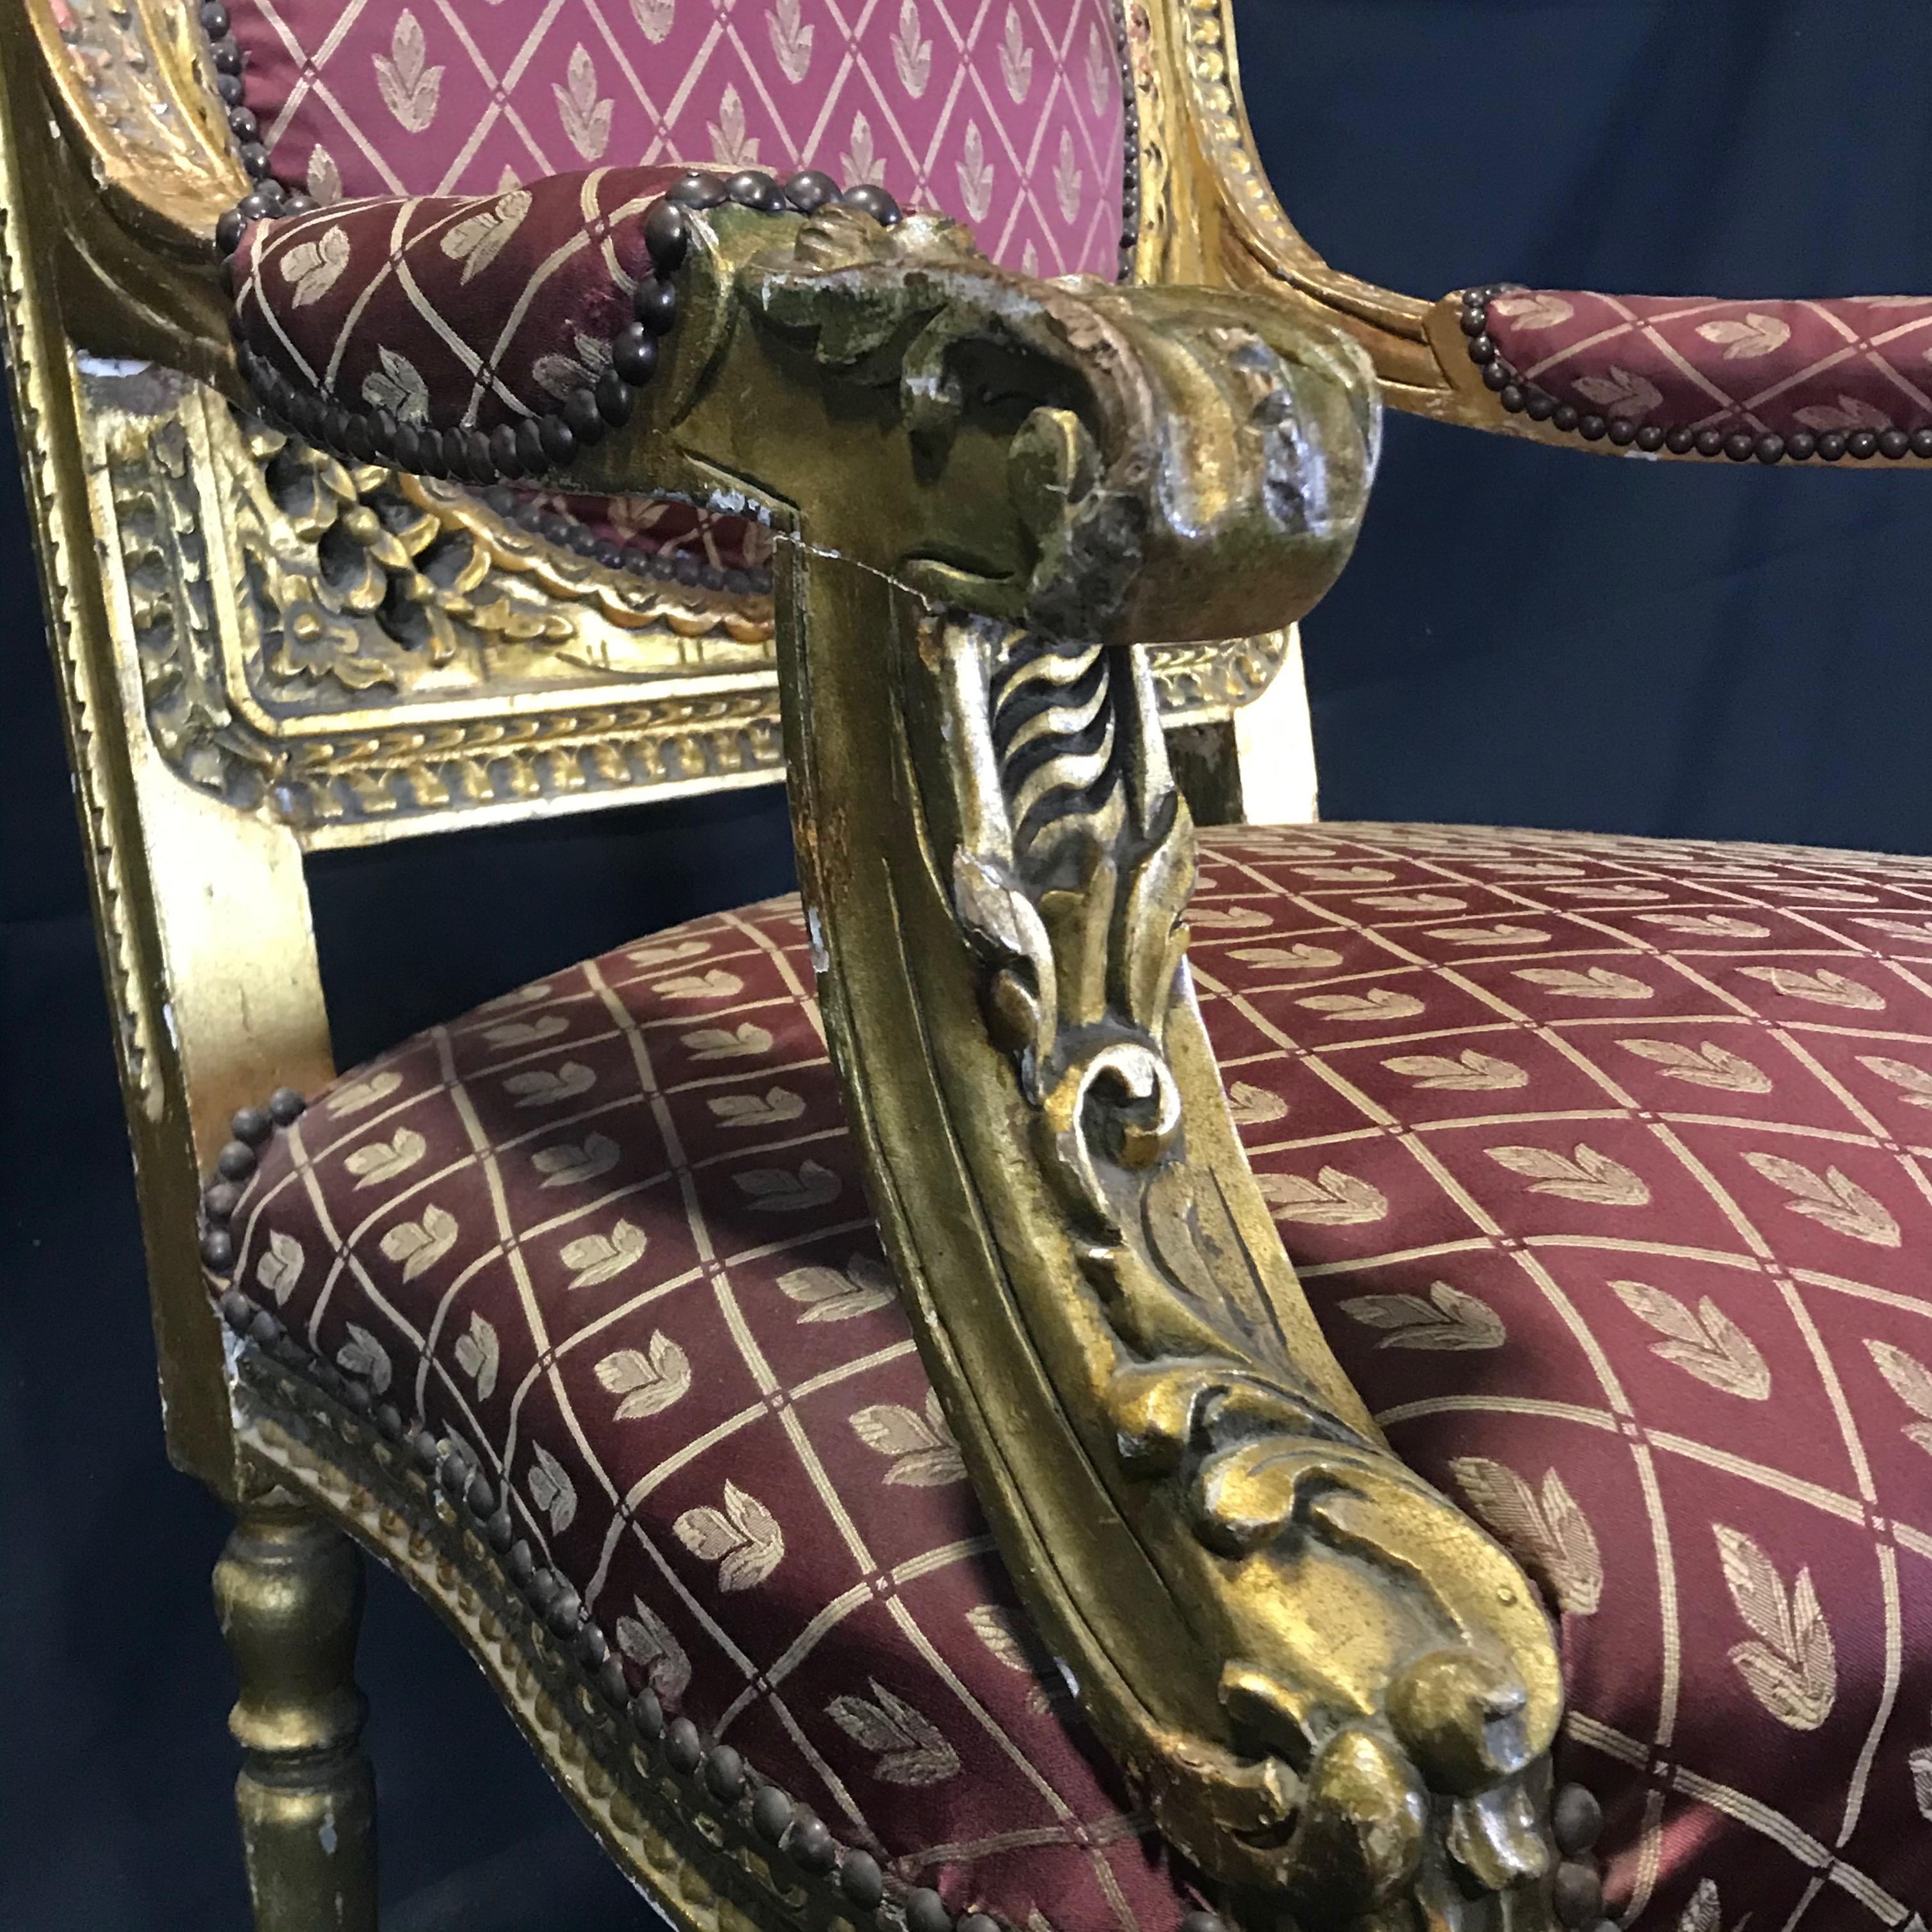 Fauteuil Louis XV français du XIXe siècle, sculpté et orné d'une finition dorée d'origine, tapissé de soie bourgogne fantaisie.
 
#4481
Mesures : H siège 19